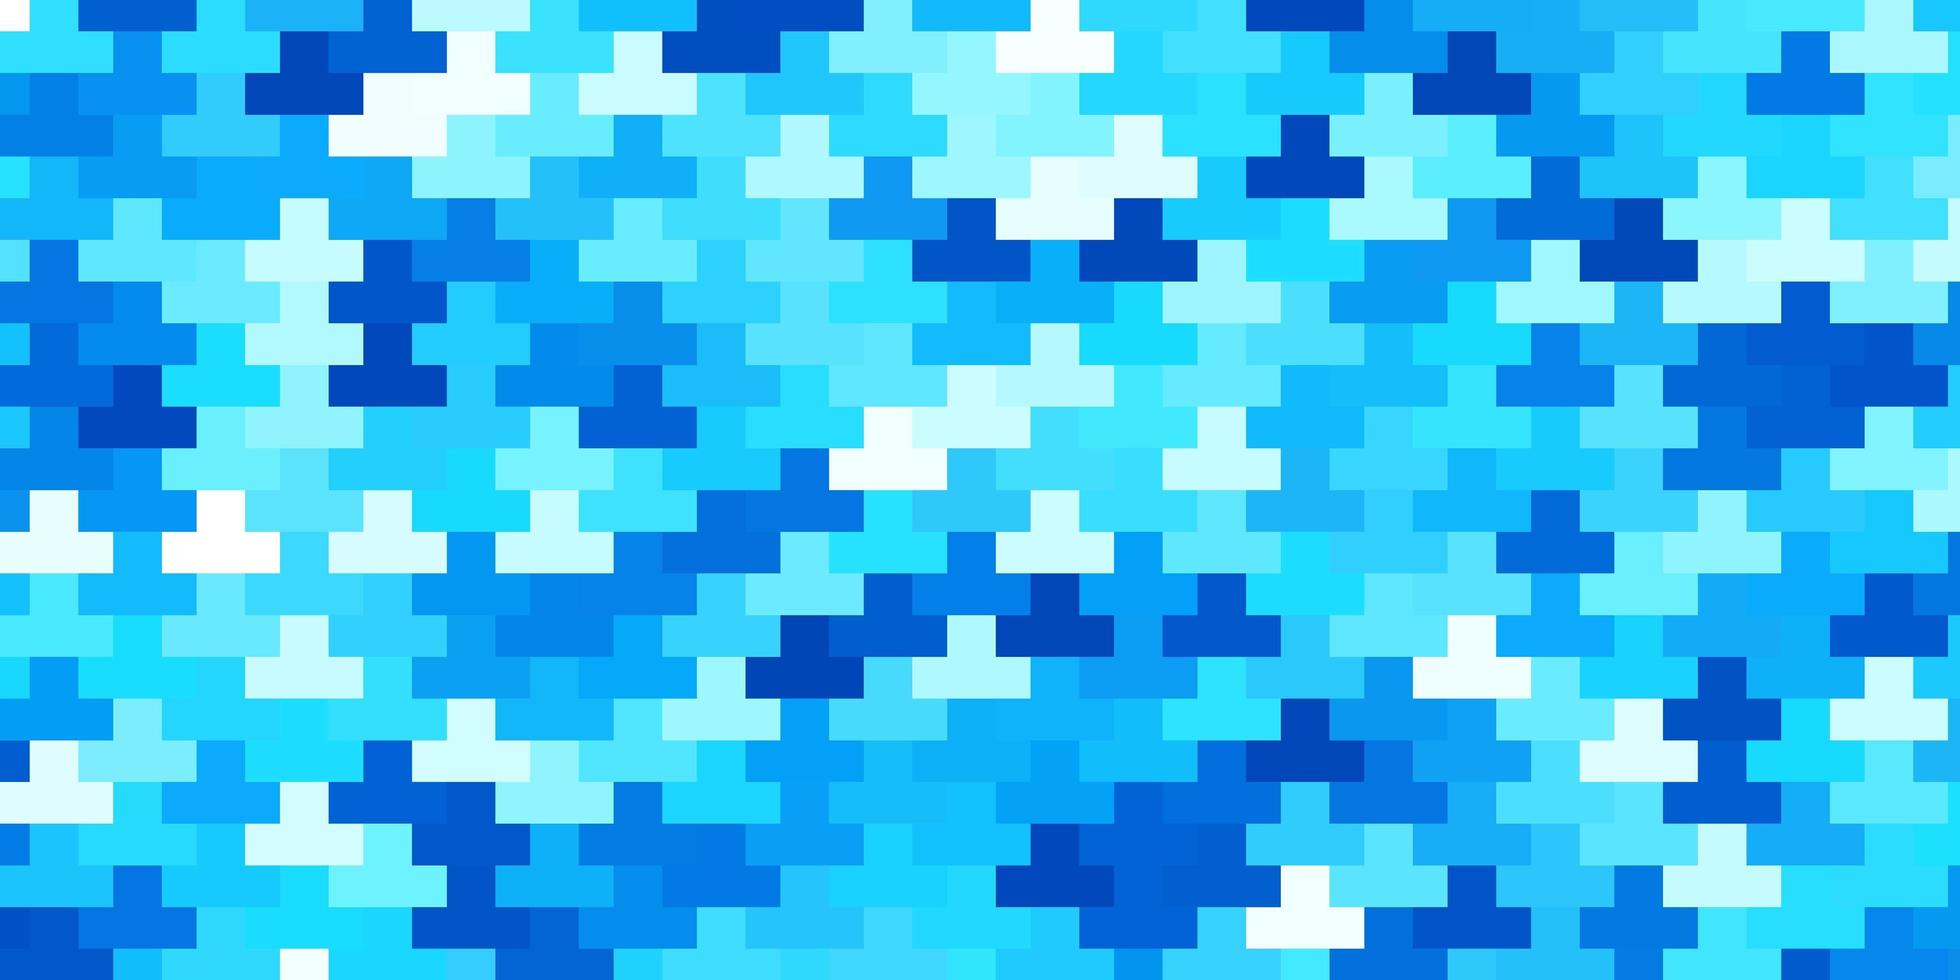 Fondo de vector azul claro en estilo poligonal ilustración colorida con rectángulos degradados y plantilla de cuadrados para teléfonos móviles